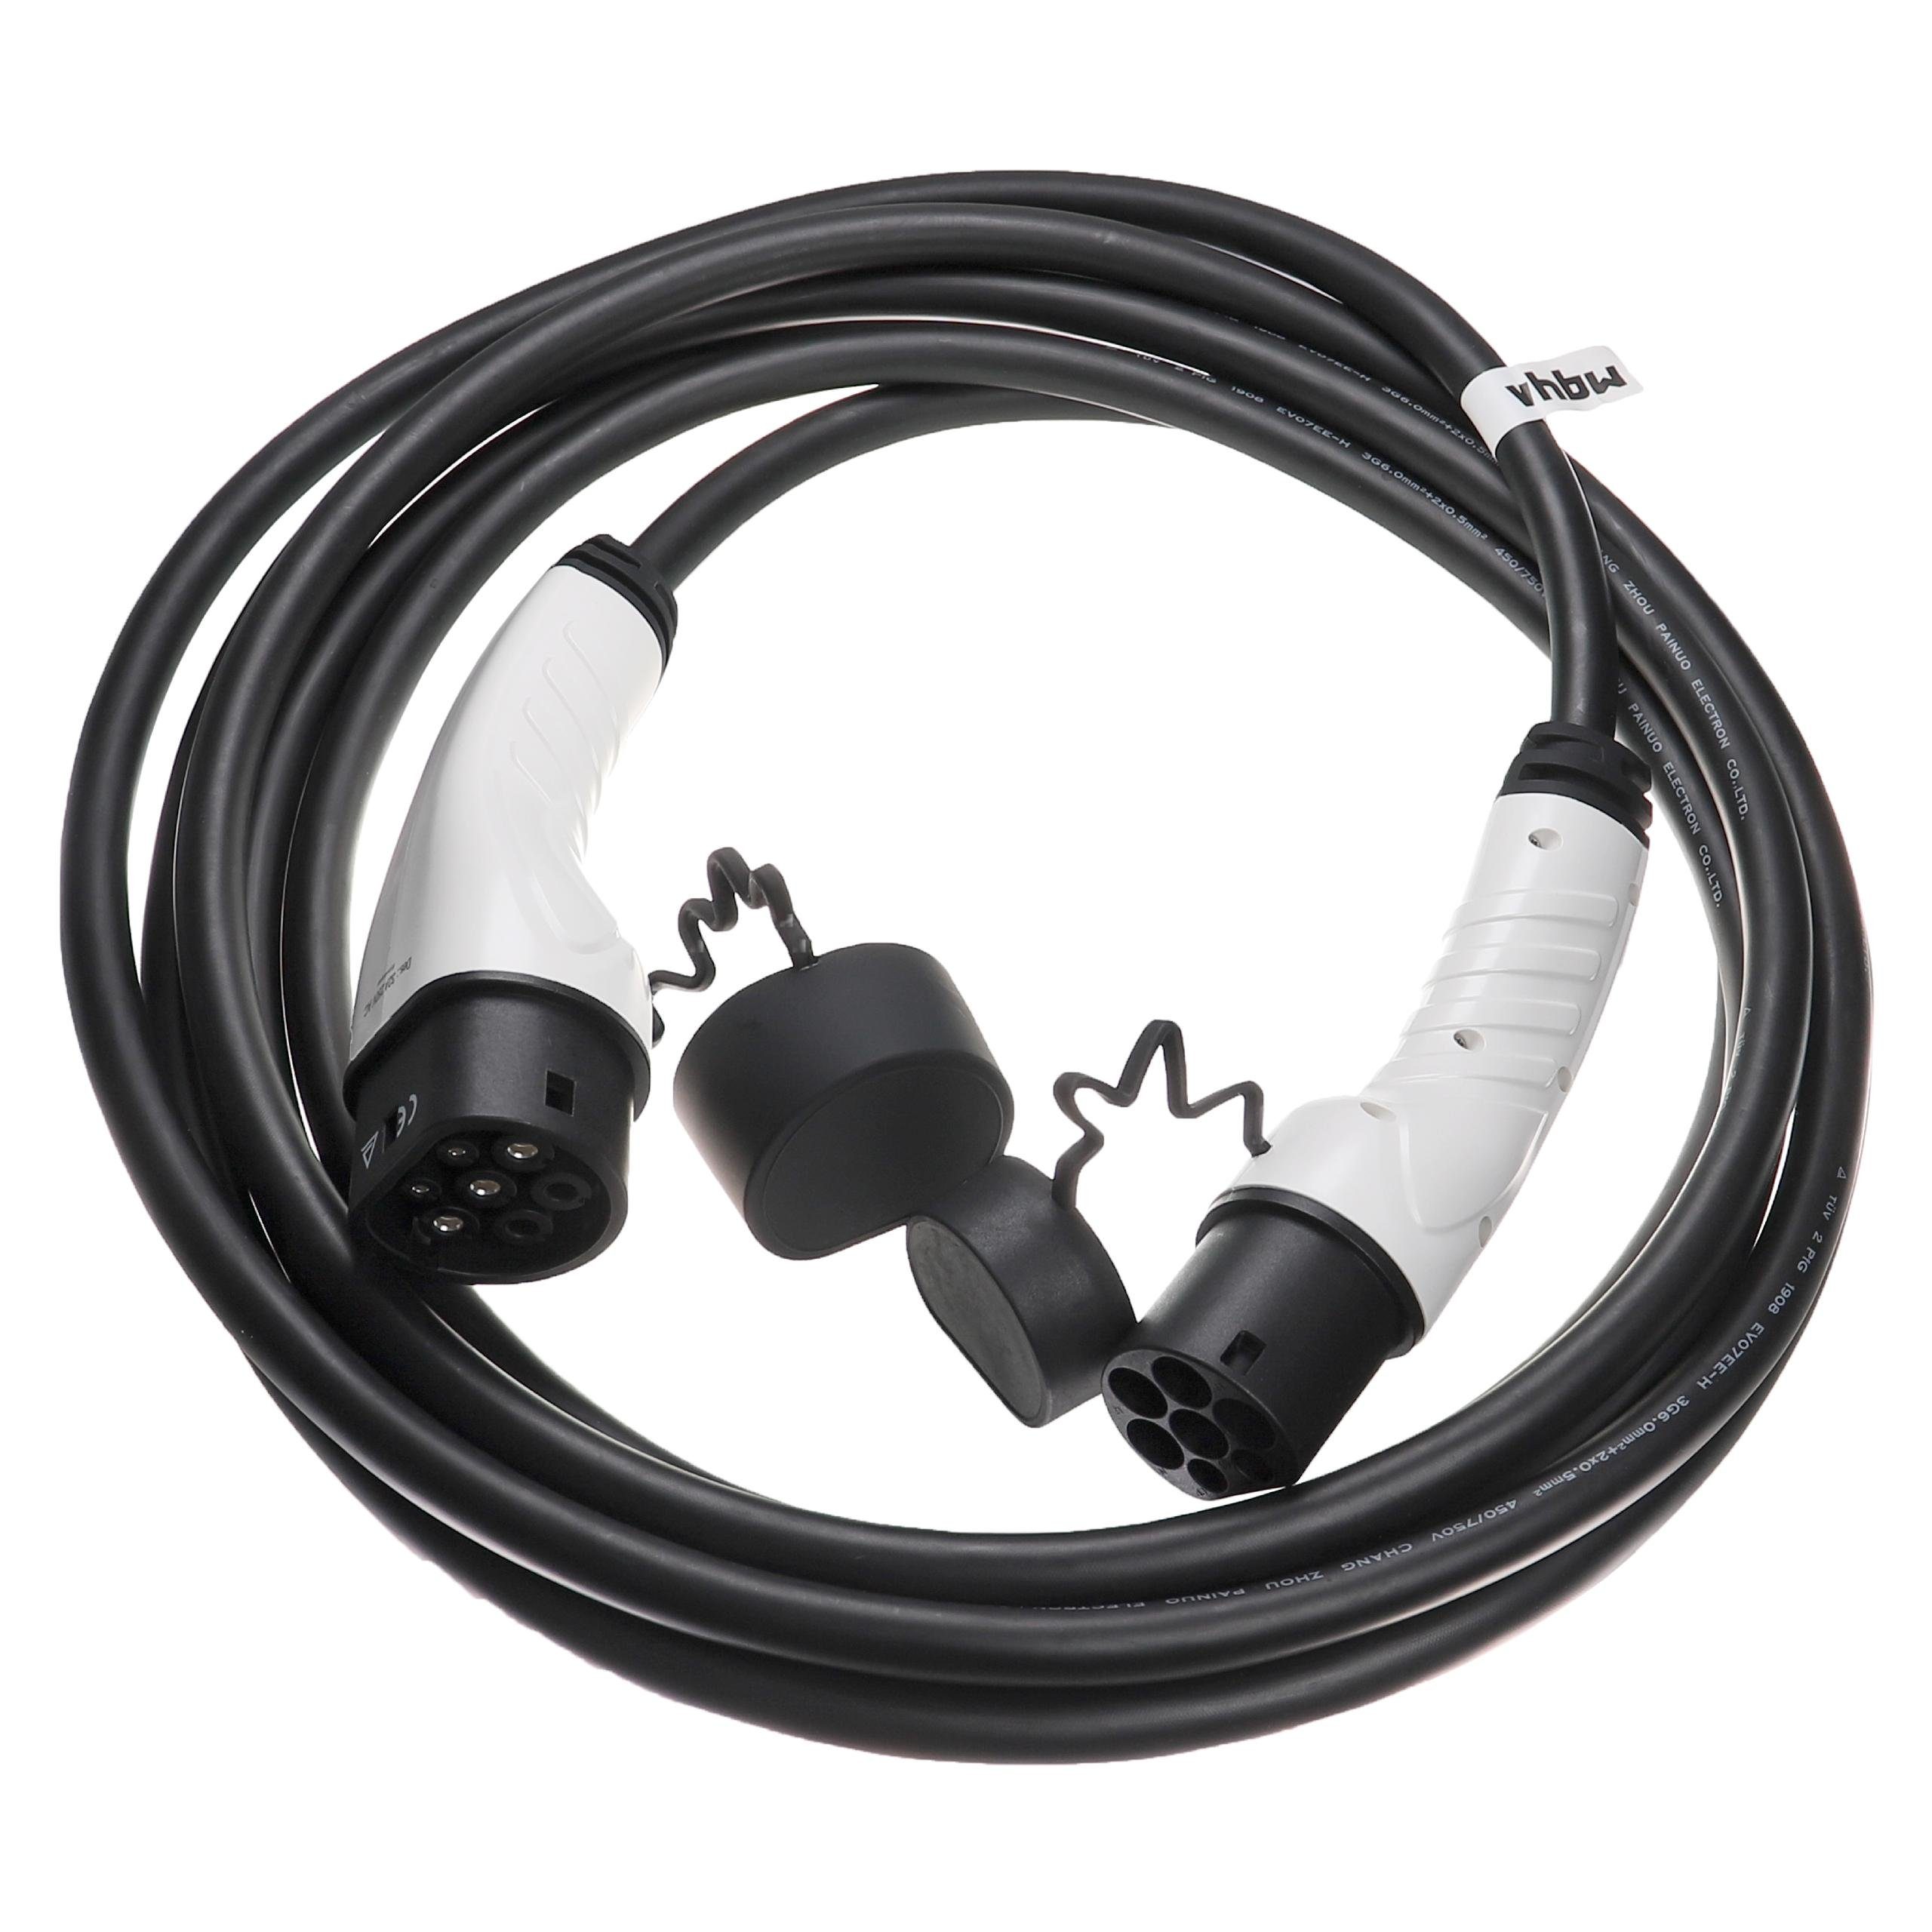 Crossback Elektro-Kabel für E-Tense, DS passend E-Tense E-Tense 4 vhbw 225, Crossback 7 3